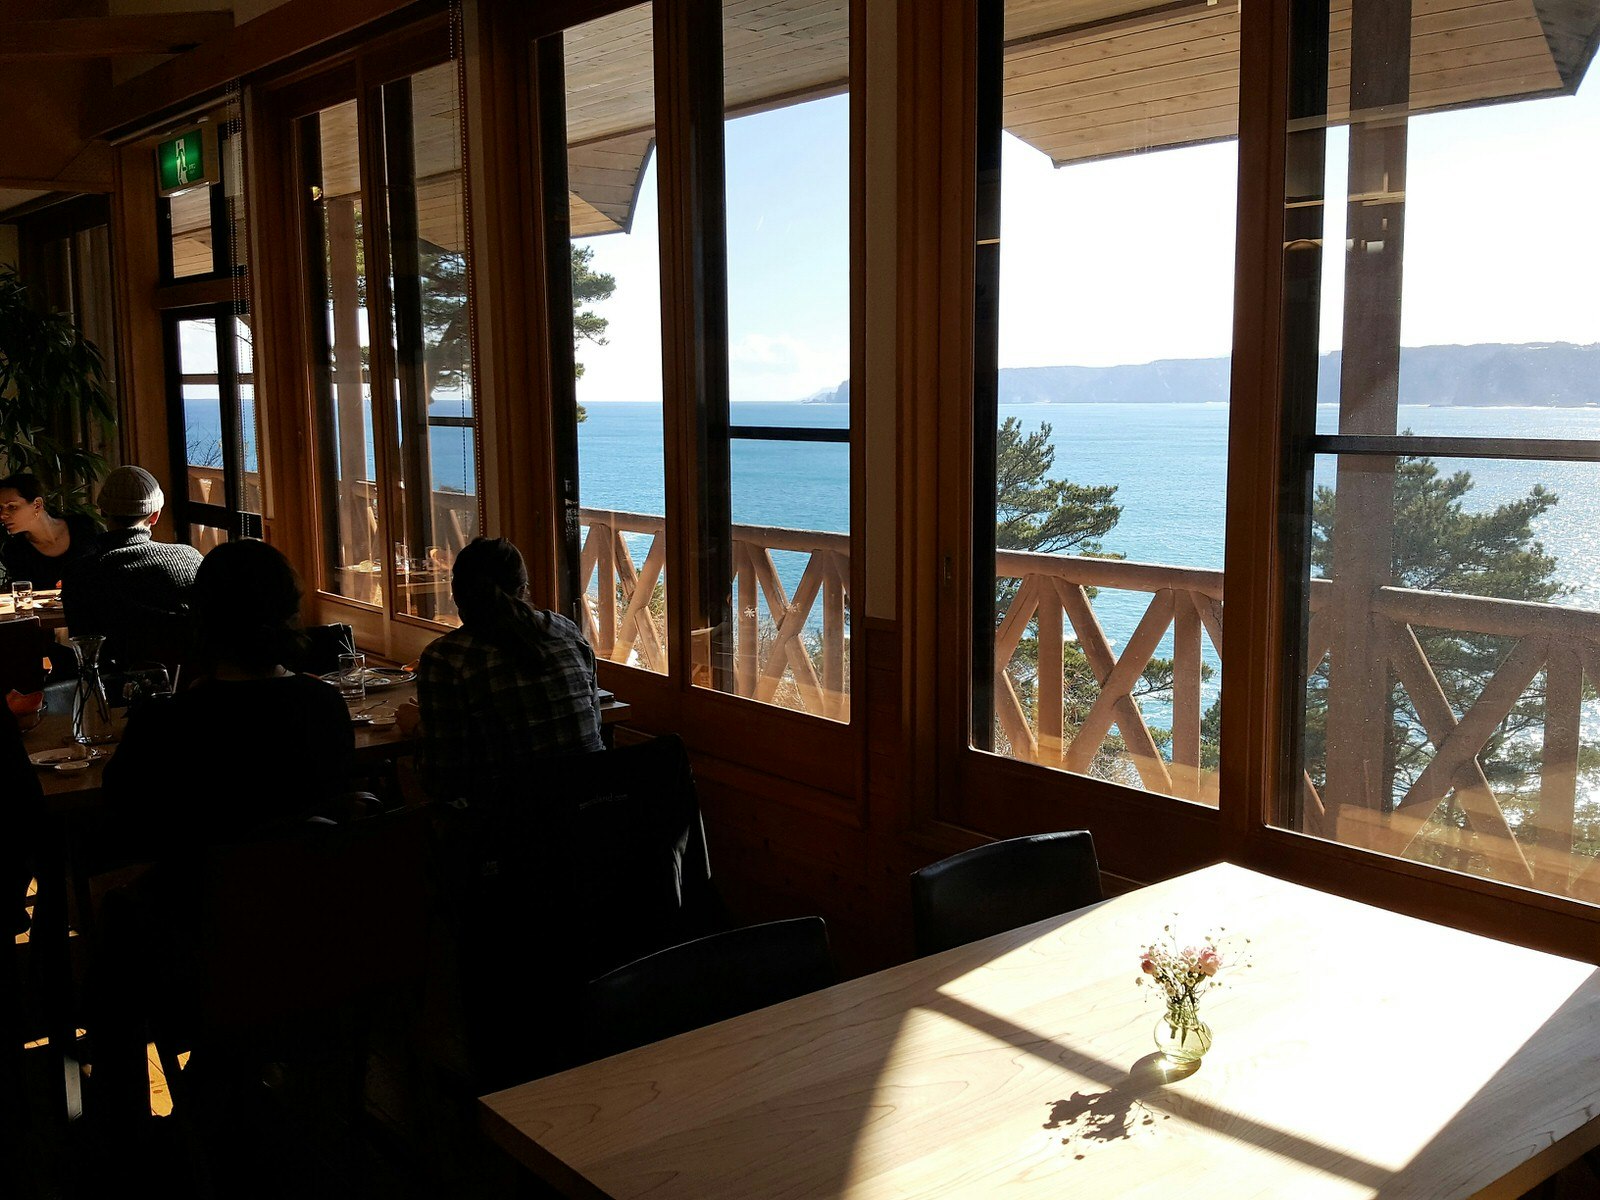 Utsikt inifrån en restaurang med stora fönster mot det blå havet och klipporna bortom